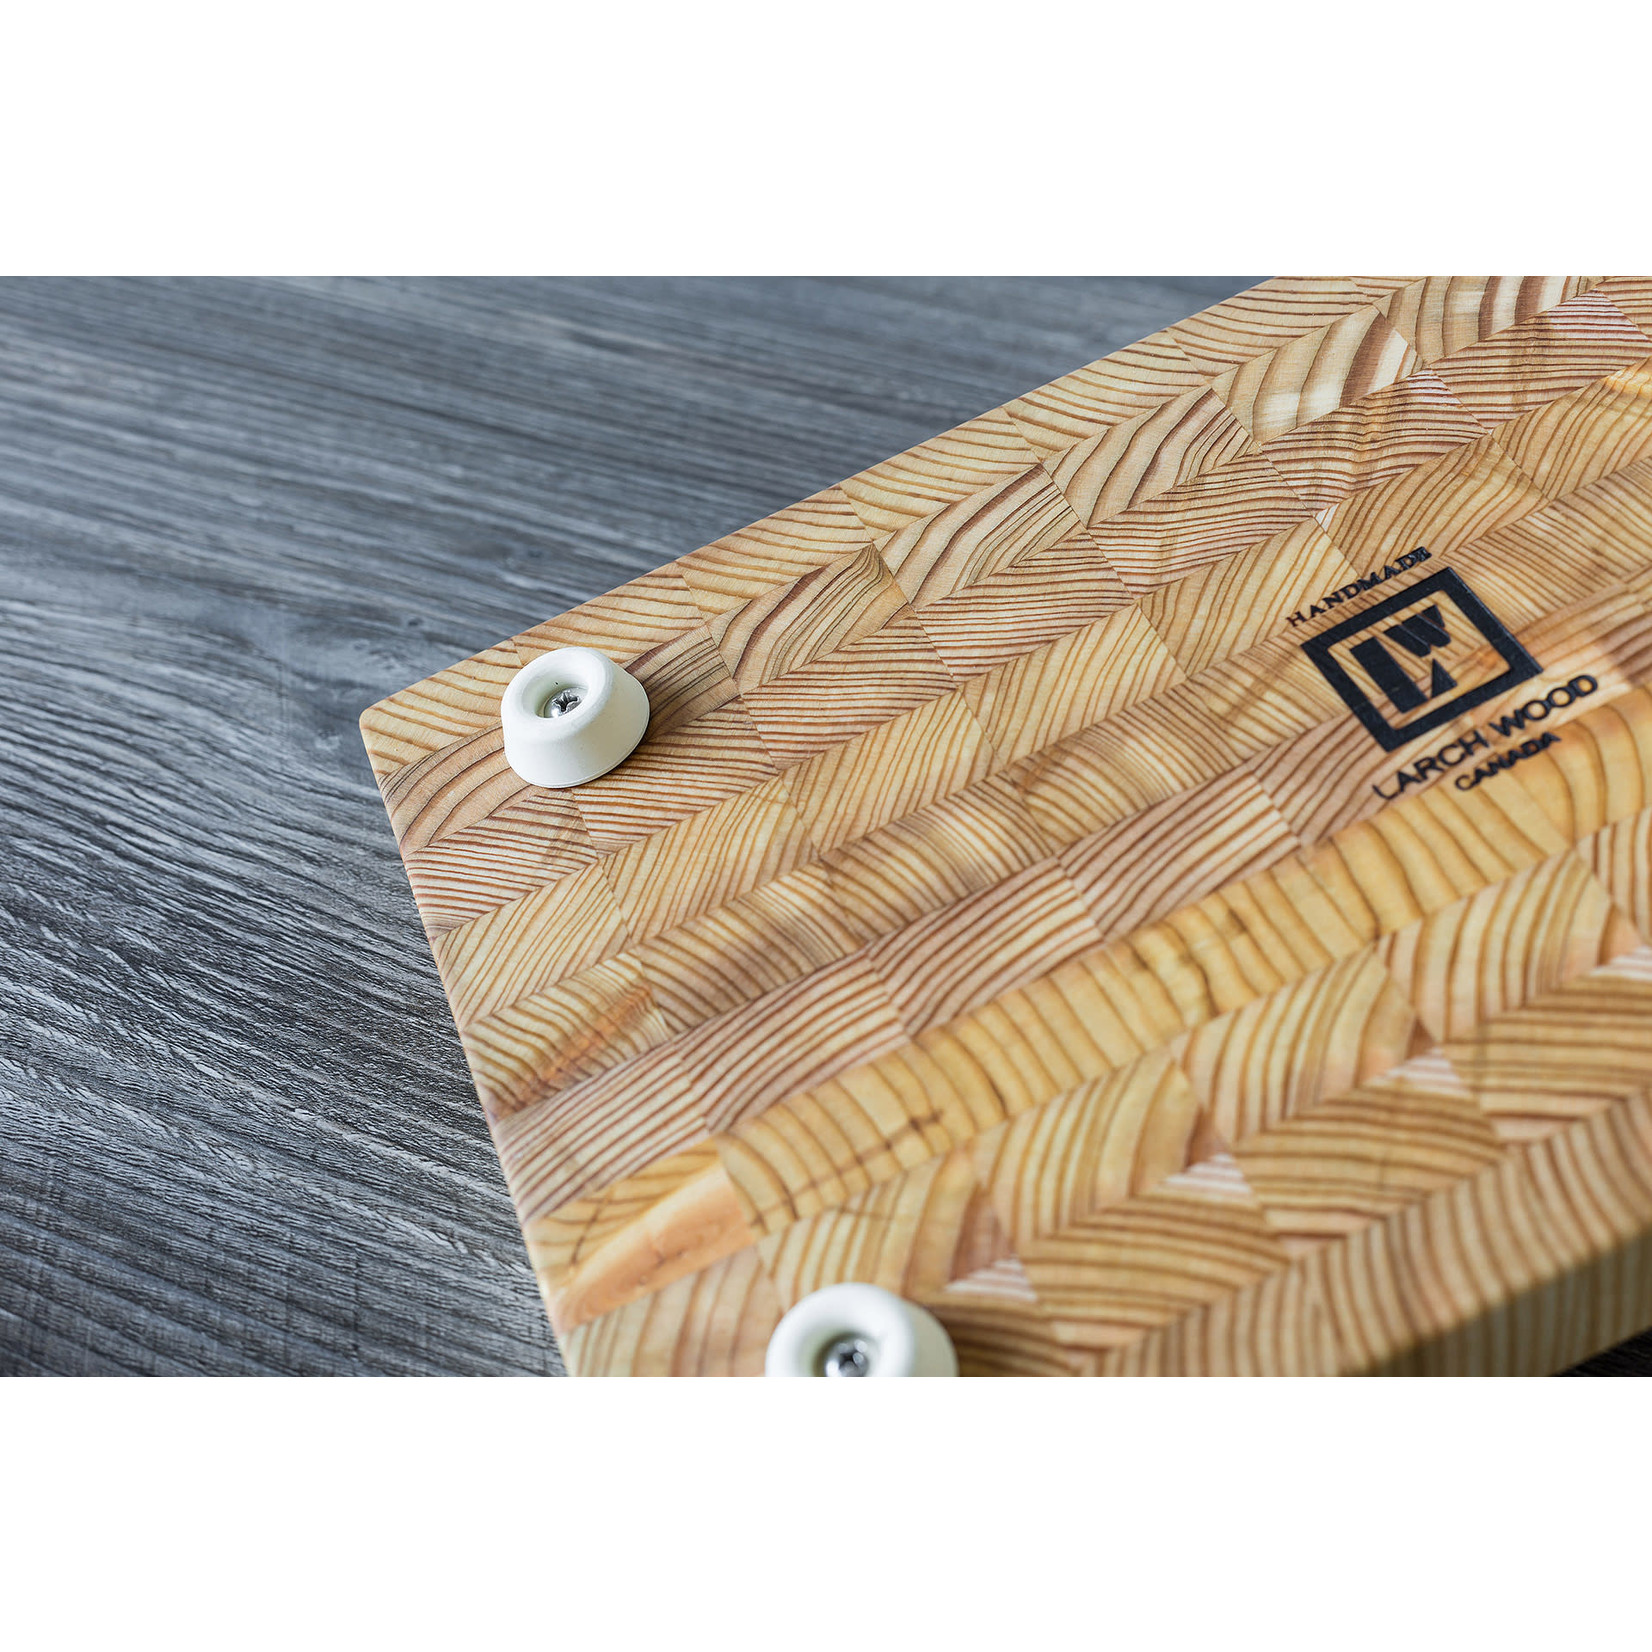 LARCHWOOD LARCHWOOD Medium One Hander Cutting Board 13.75x8.75x1.25”